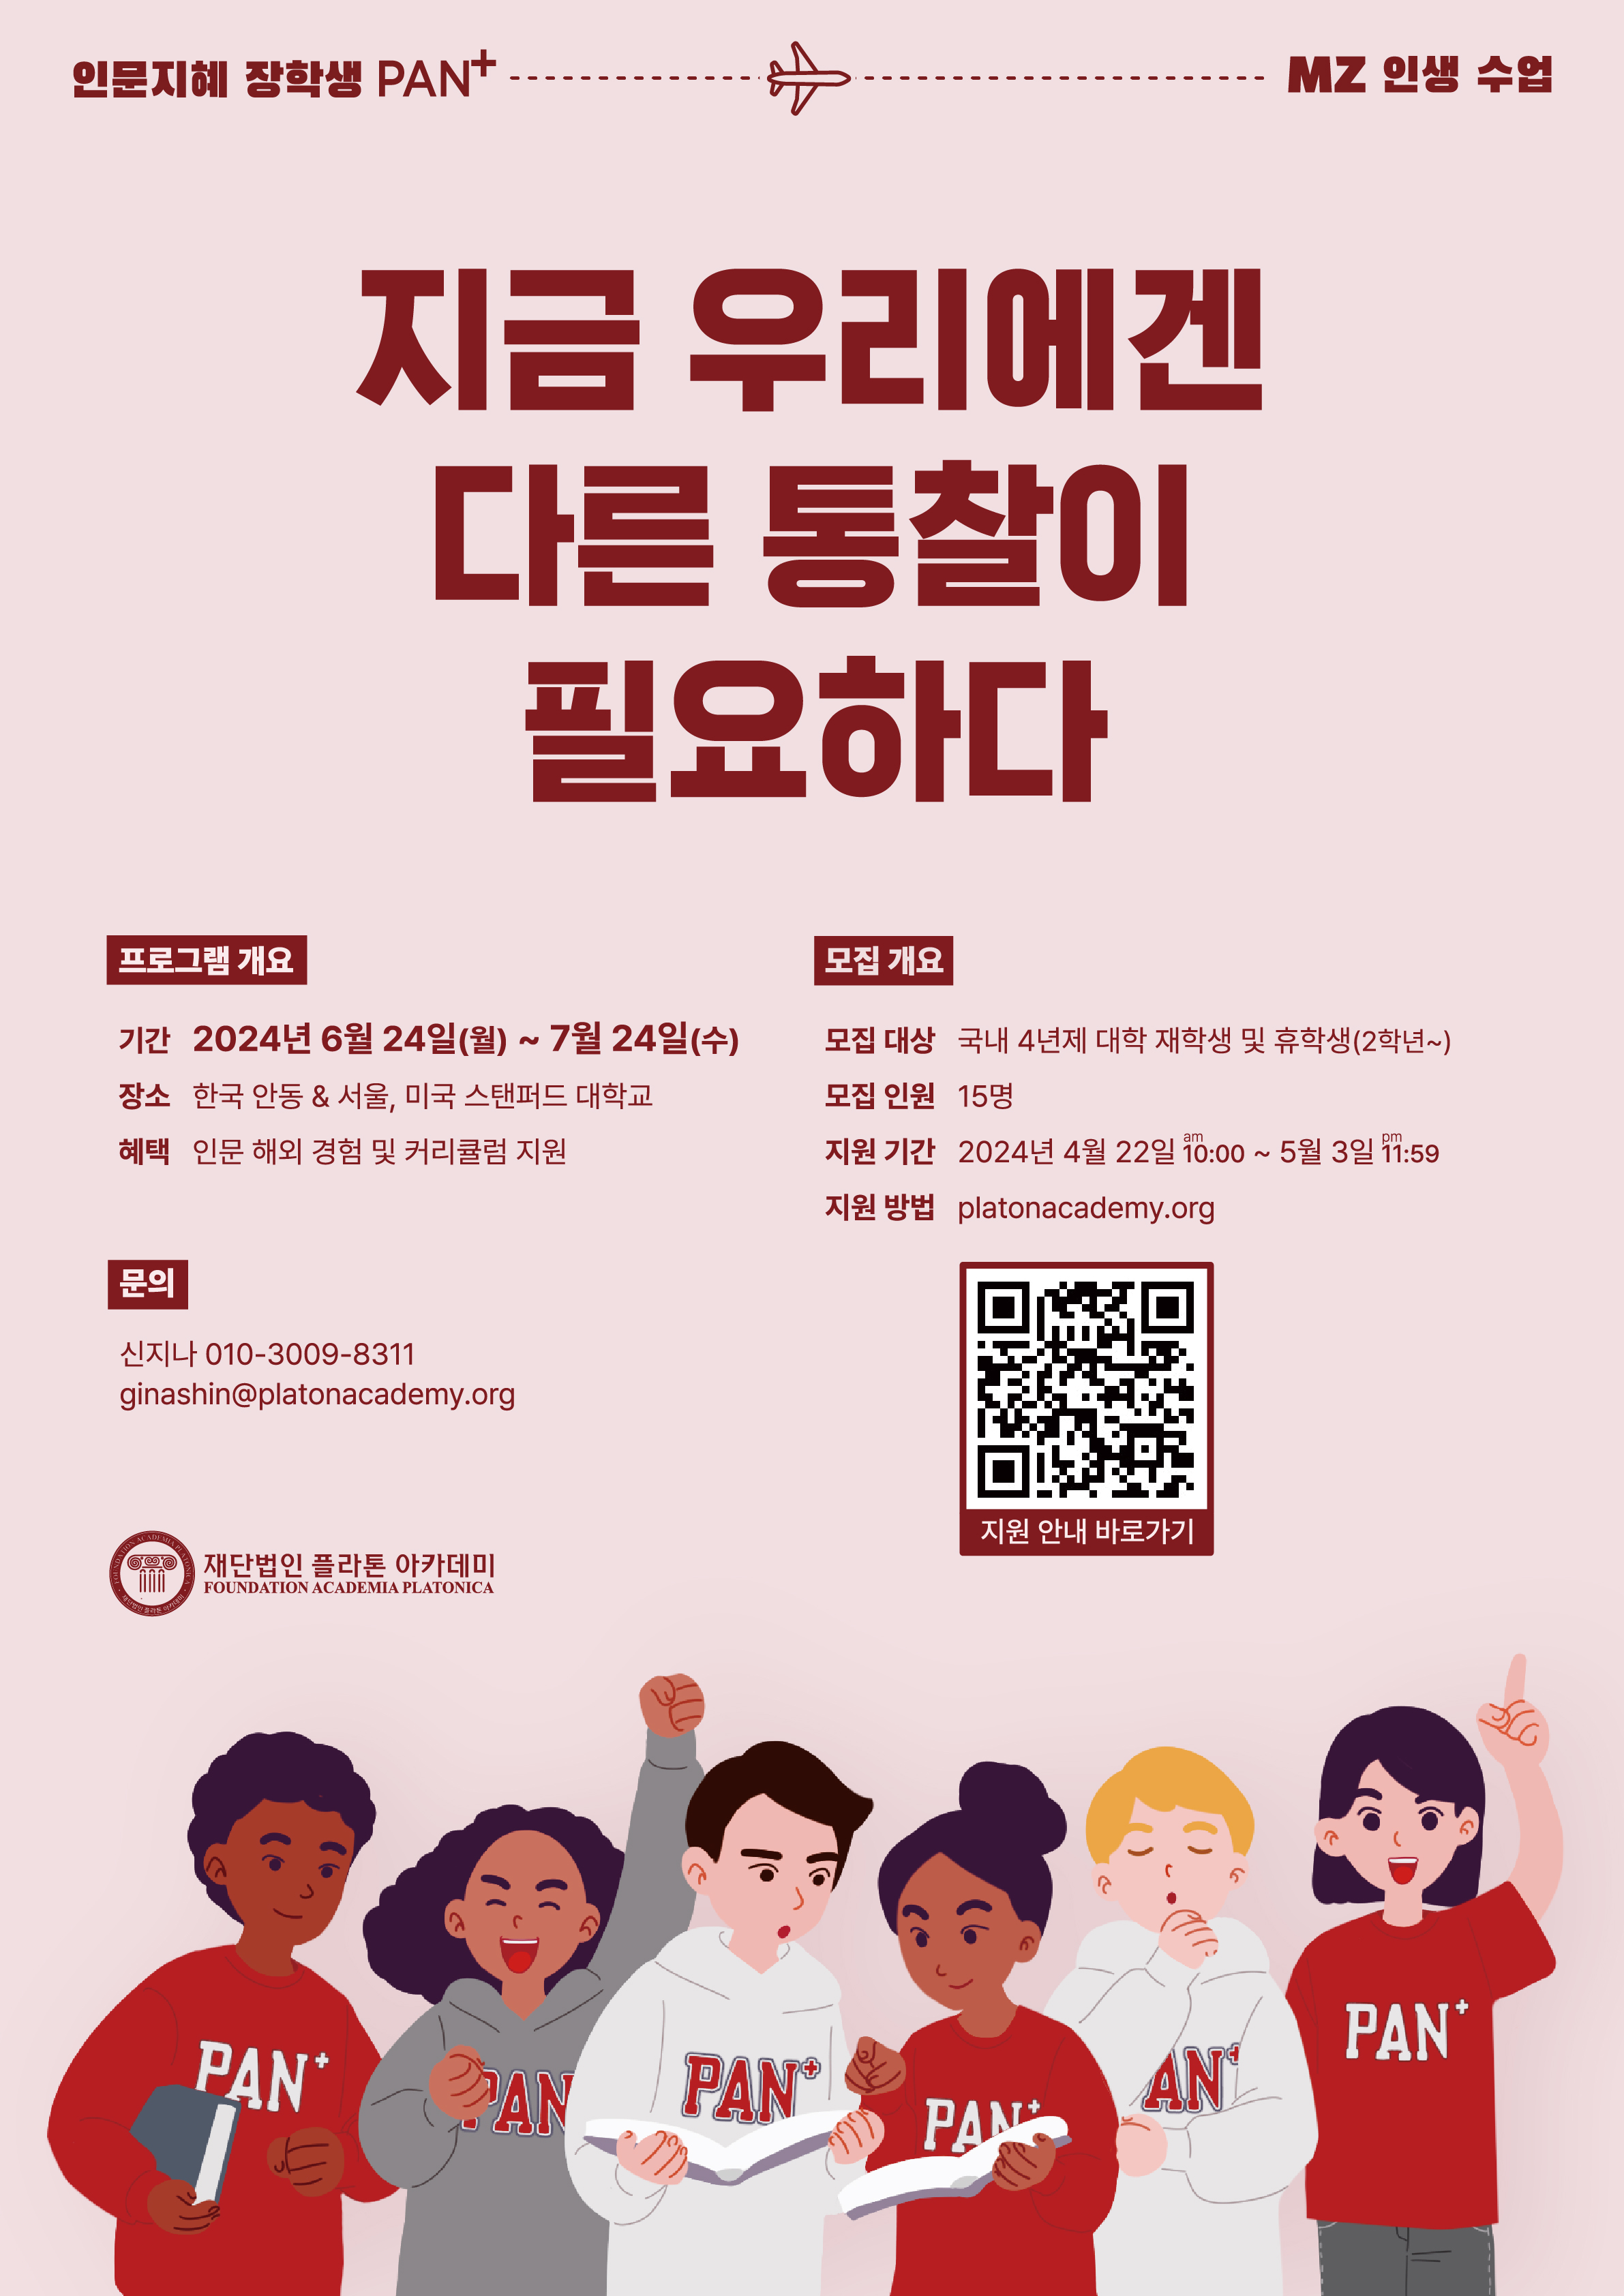 [홍보] 플라톤아카데미 해외 경험 PAN+ 장학생 모집(apply until 5.3.) 